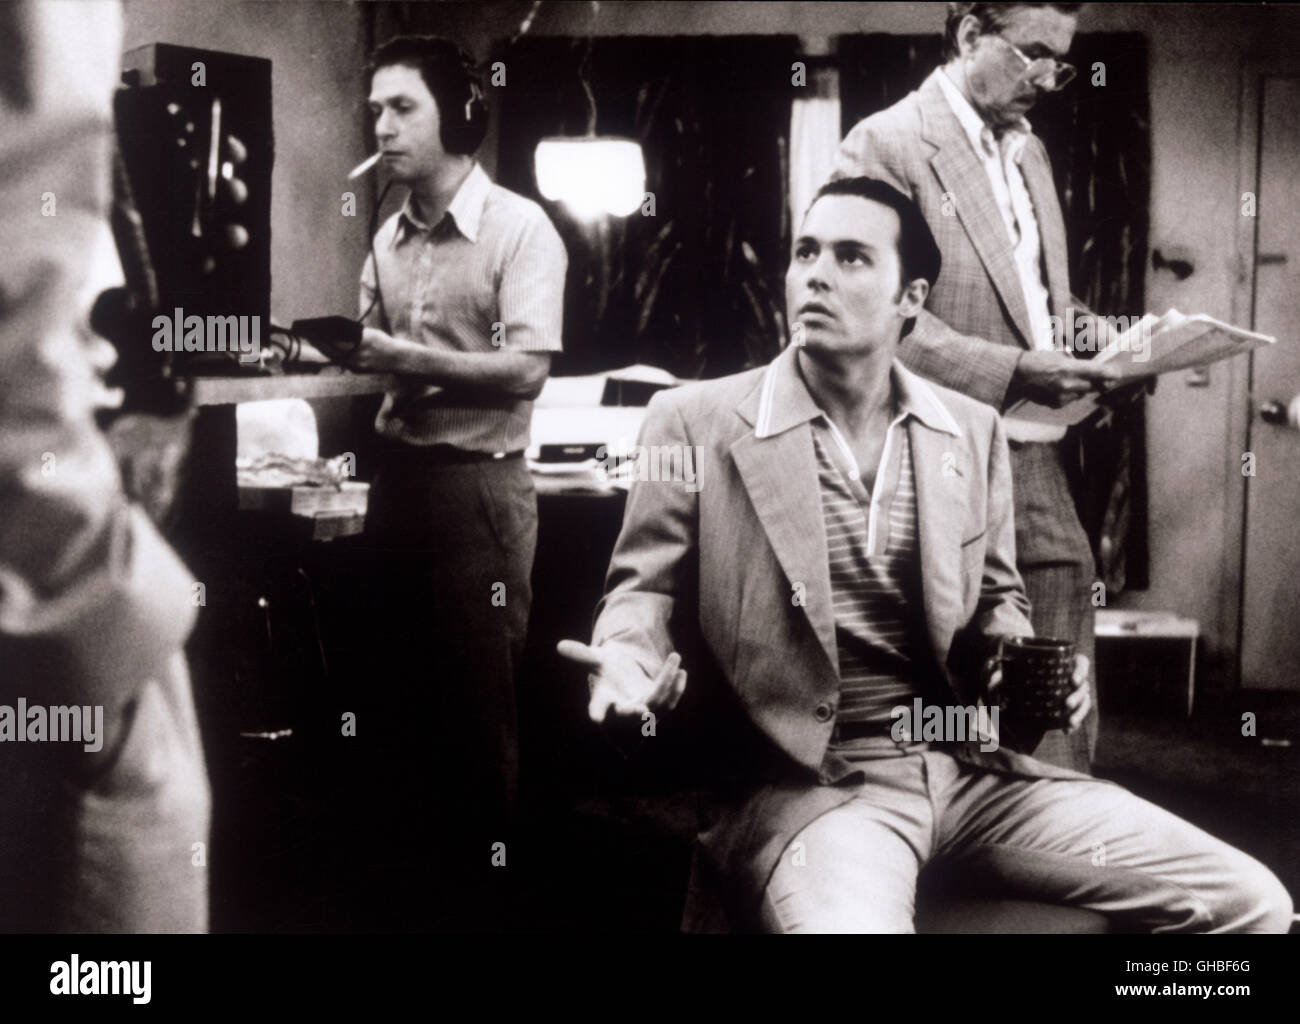 DONNIE BRASCO USA 1997 Mike Newell Szene mit Donnie Brasco/Joe Pistone (JOHNNY DEPP) Regie: Mike Newell Stock Photo